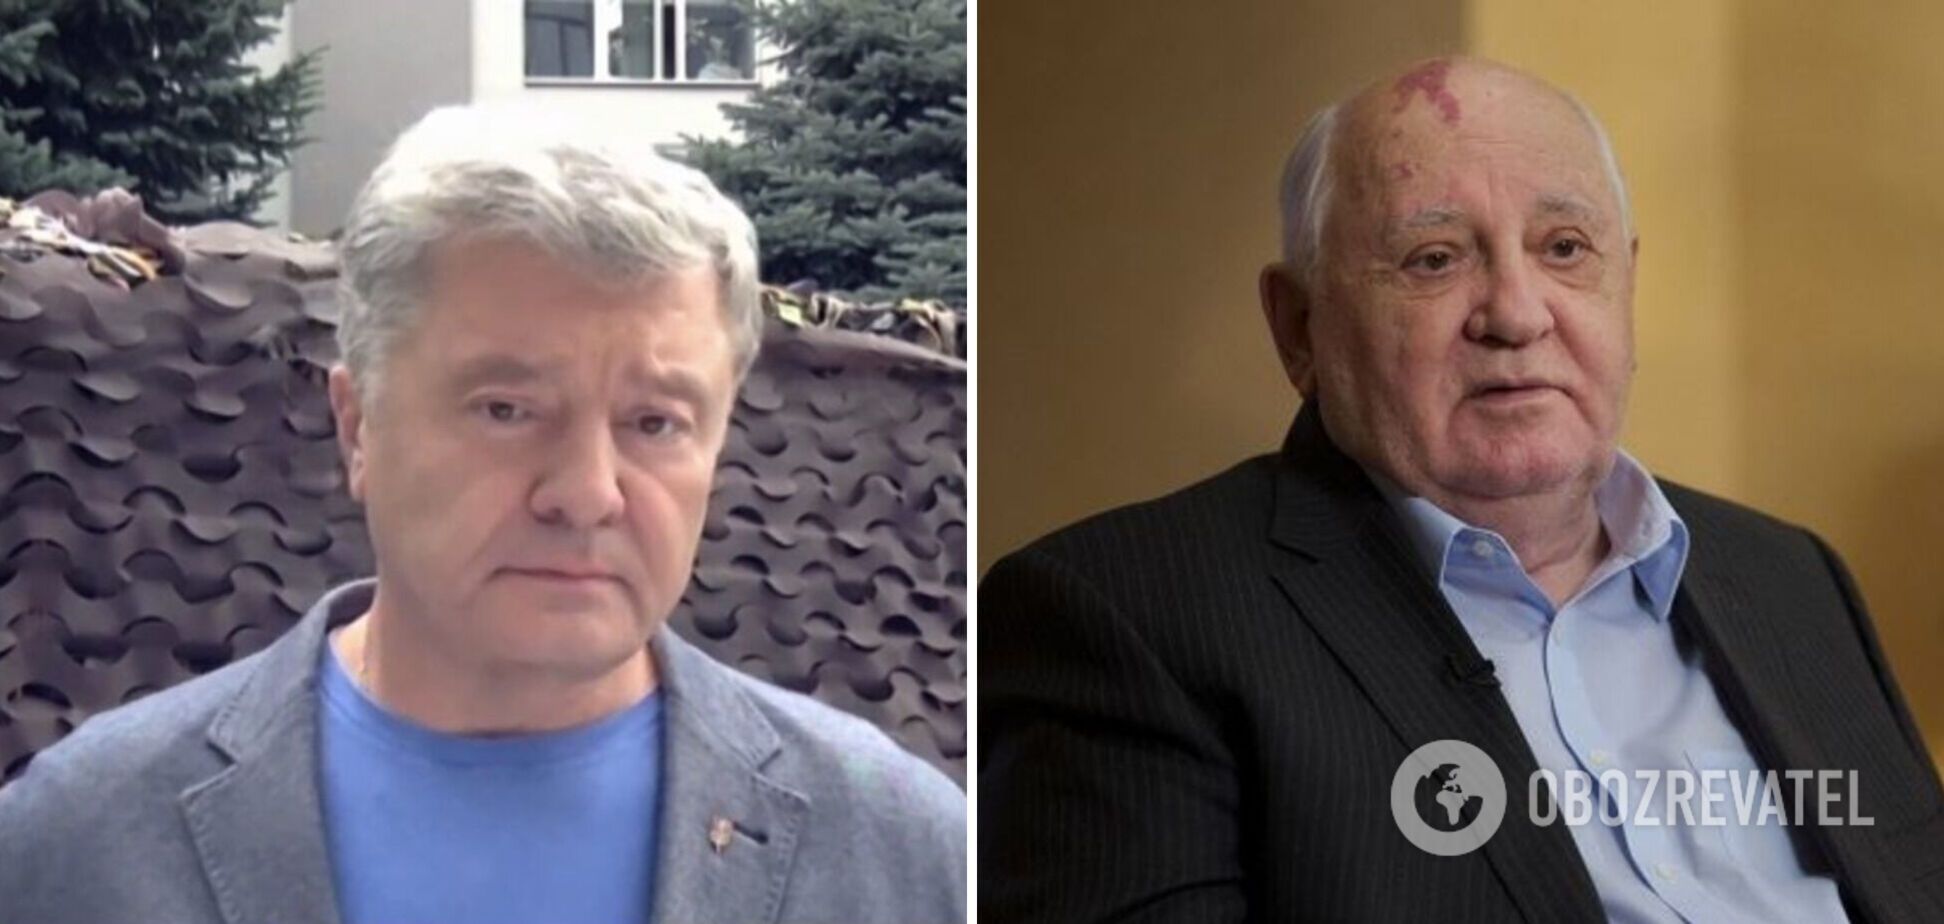 Горбачов підтримав анексію Криму й агресію РФ проти України, попри всі здобутки на міжнародній арені, – Порошенко для Sky News